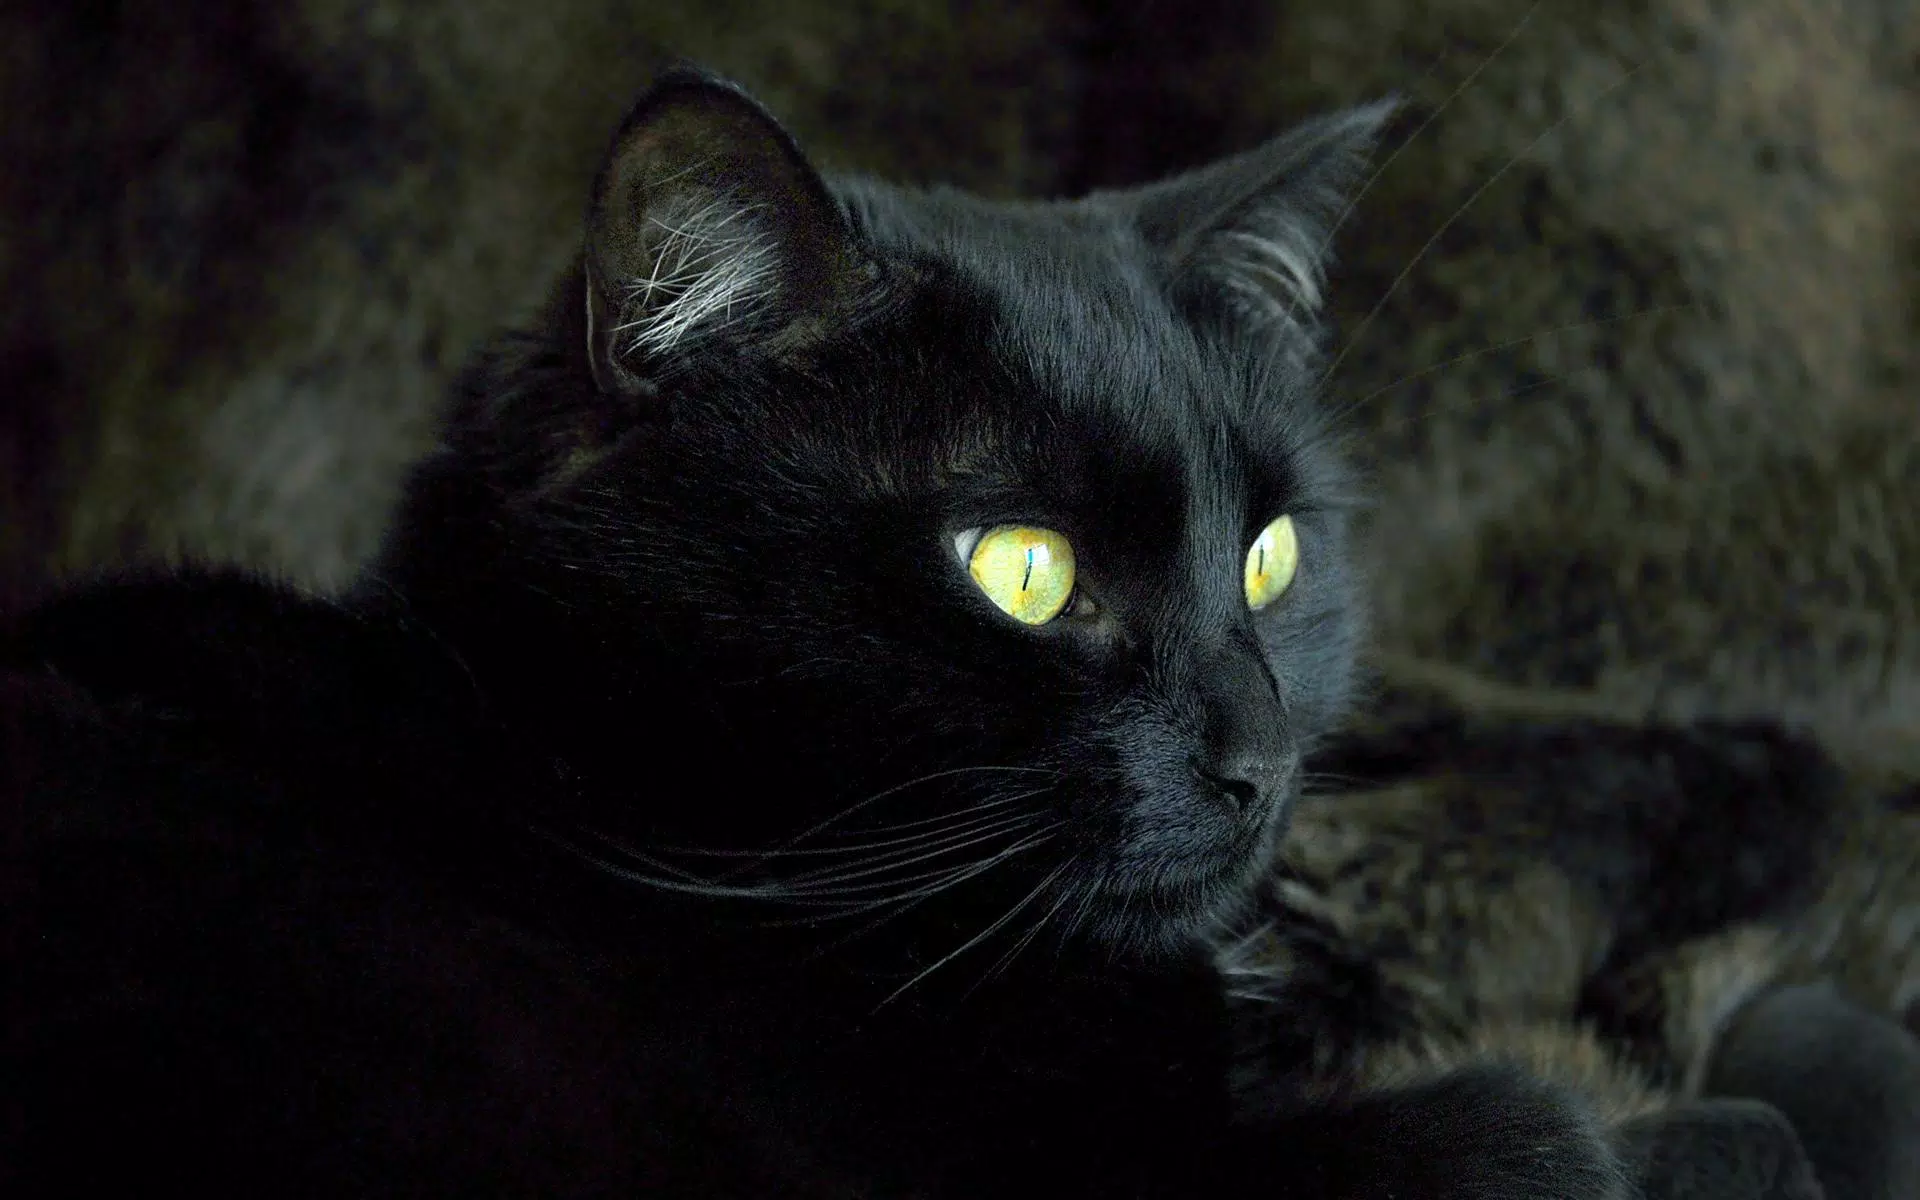 Black cat wallpaper: Bạn yêu thích những chú mèo tuyệt đẹp và đang tìm kiếm một tấm hình nền điện thoại mới? Hãy đến và khám phá bộ sưu tập hình nền với những chú mèo đen bí ẩn và đầy quyến rũ. Với độ phân giải cao và hiệu ứng tuyệt vời, bạn sẽ có một trải nghiệm xem phong cảnh đầy cảm xúc!